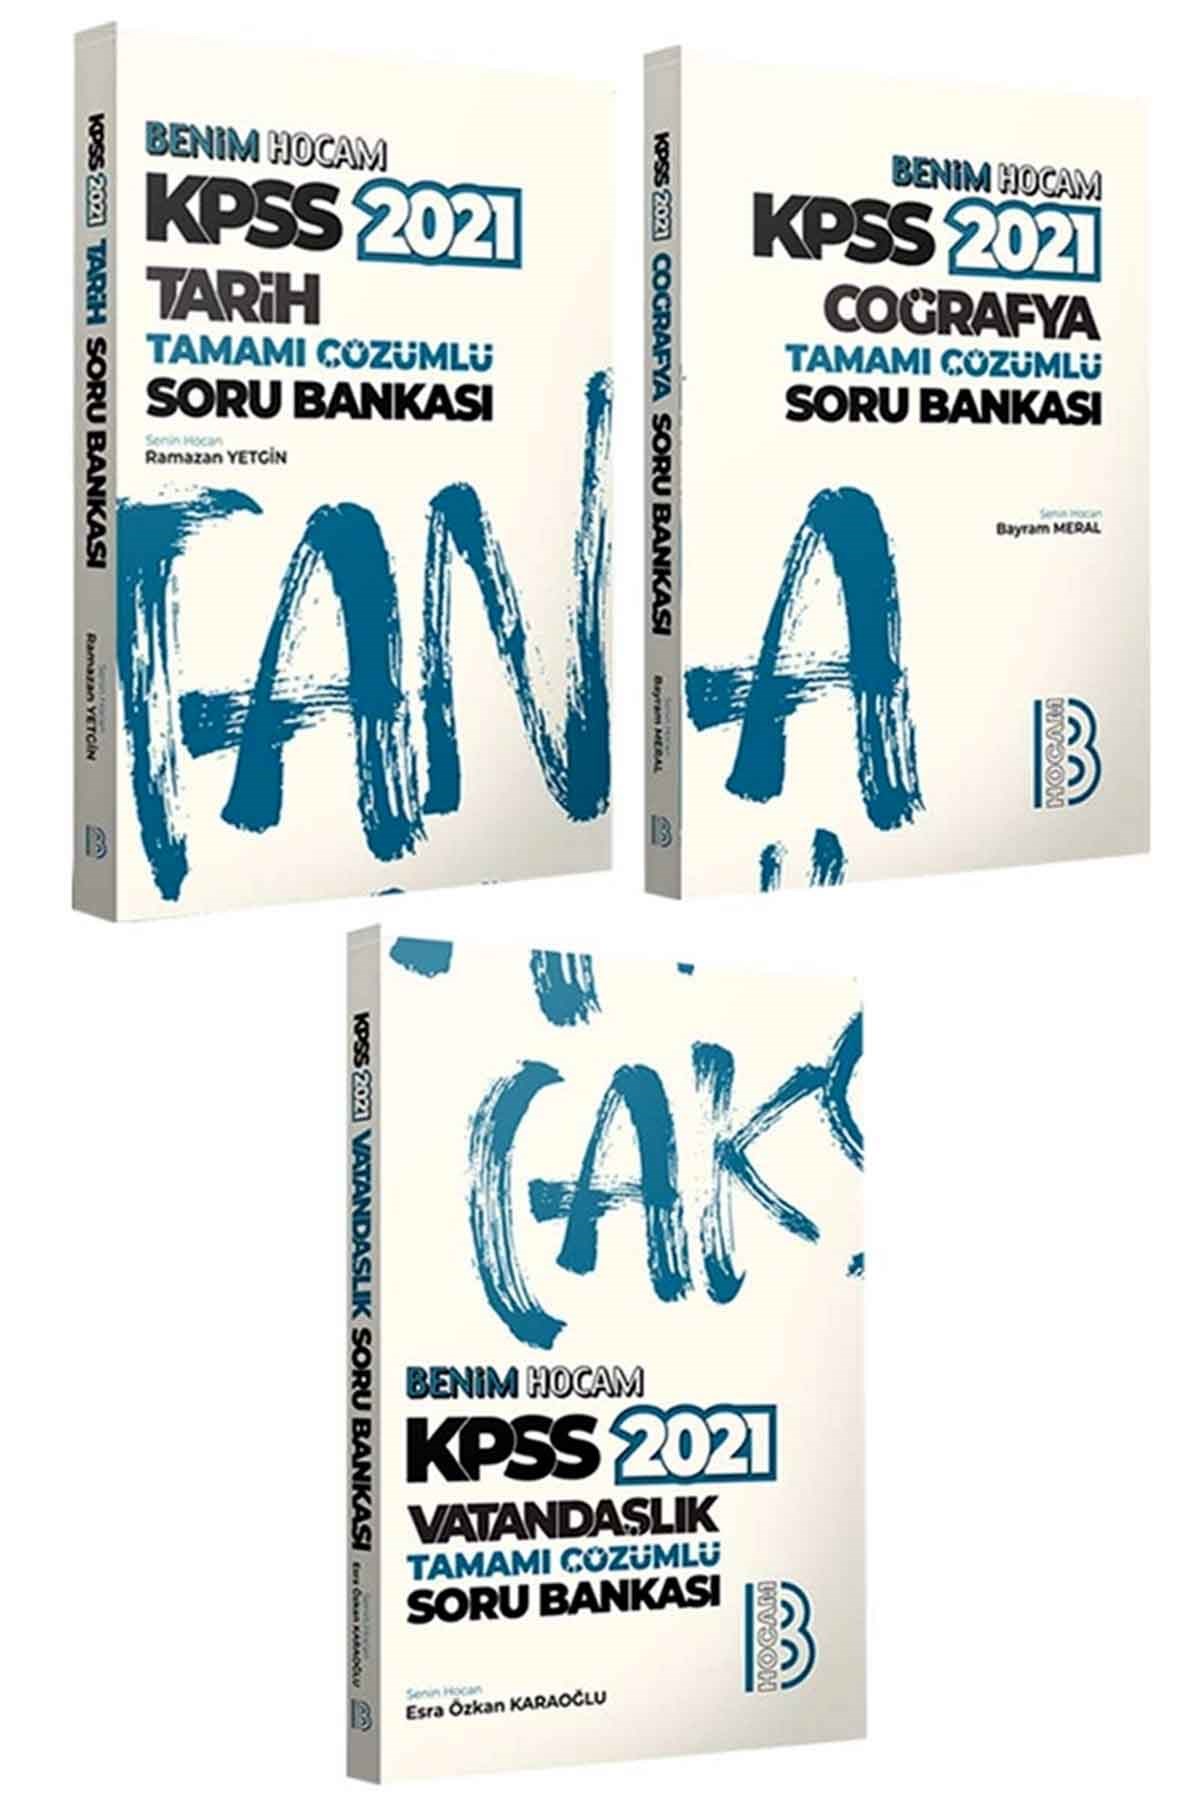 Benim Hocam Yayınları 2021 KPSS Genel Kültür Tamamı Çözümlü Soru Bankası  Seti